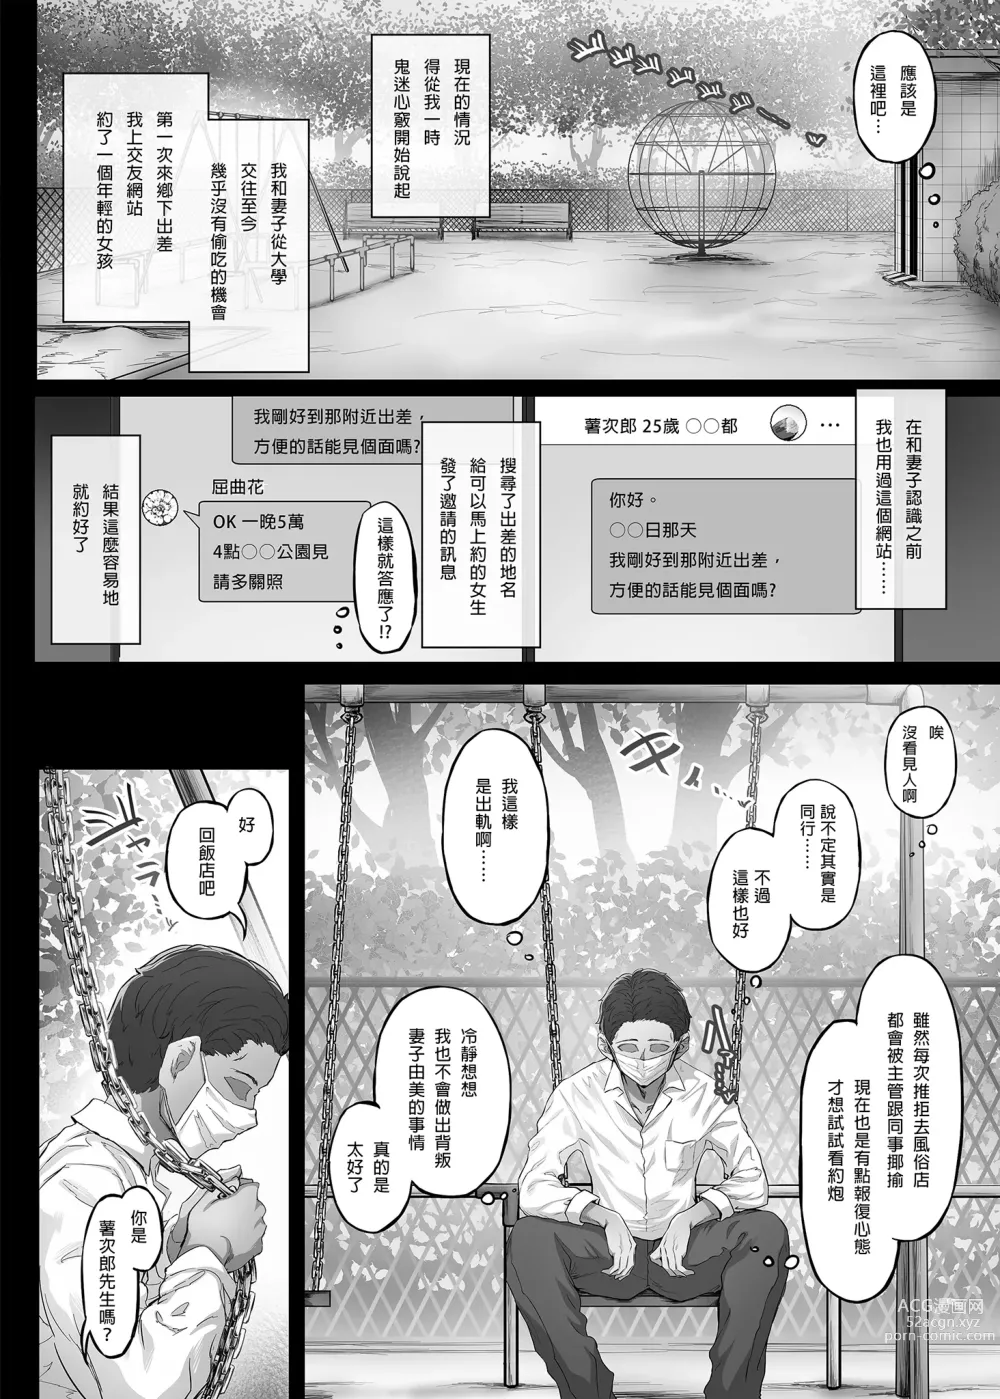 Page 6 of doujinshi Kajitsu C-ori01